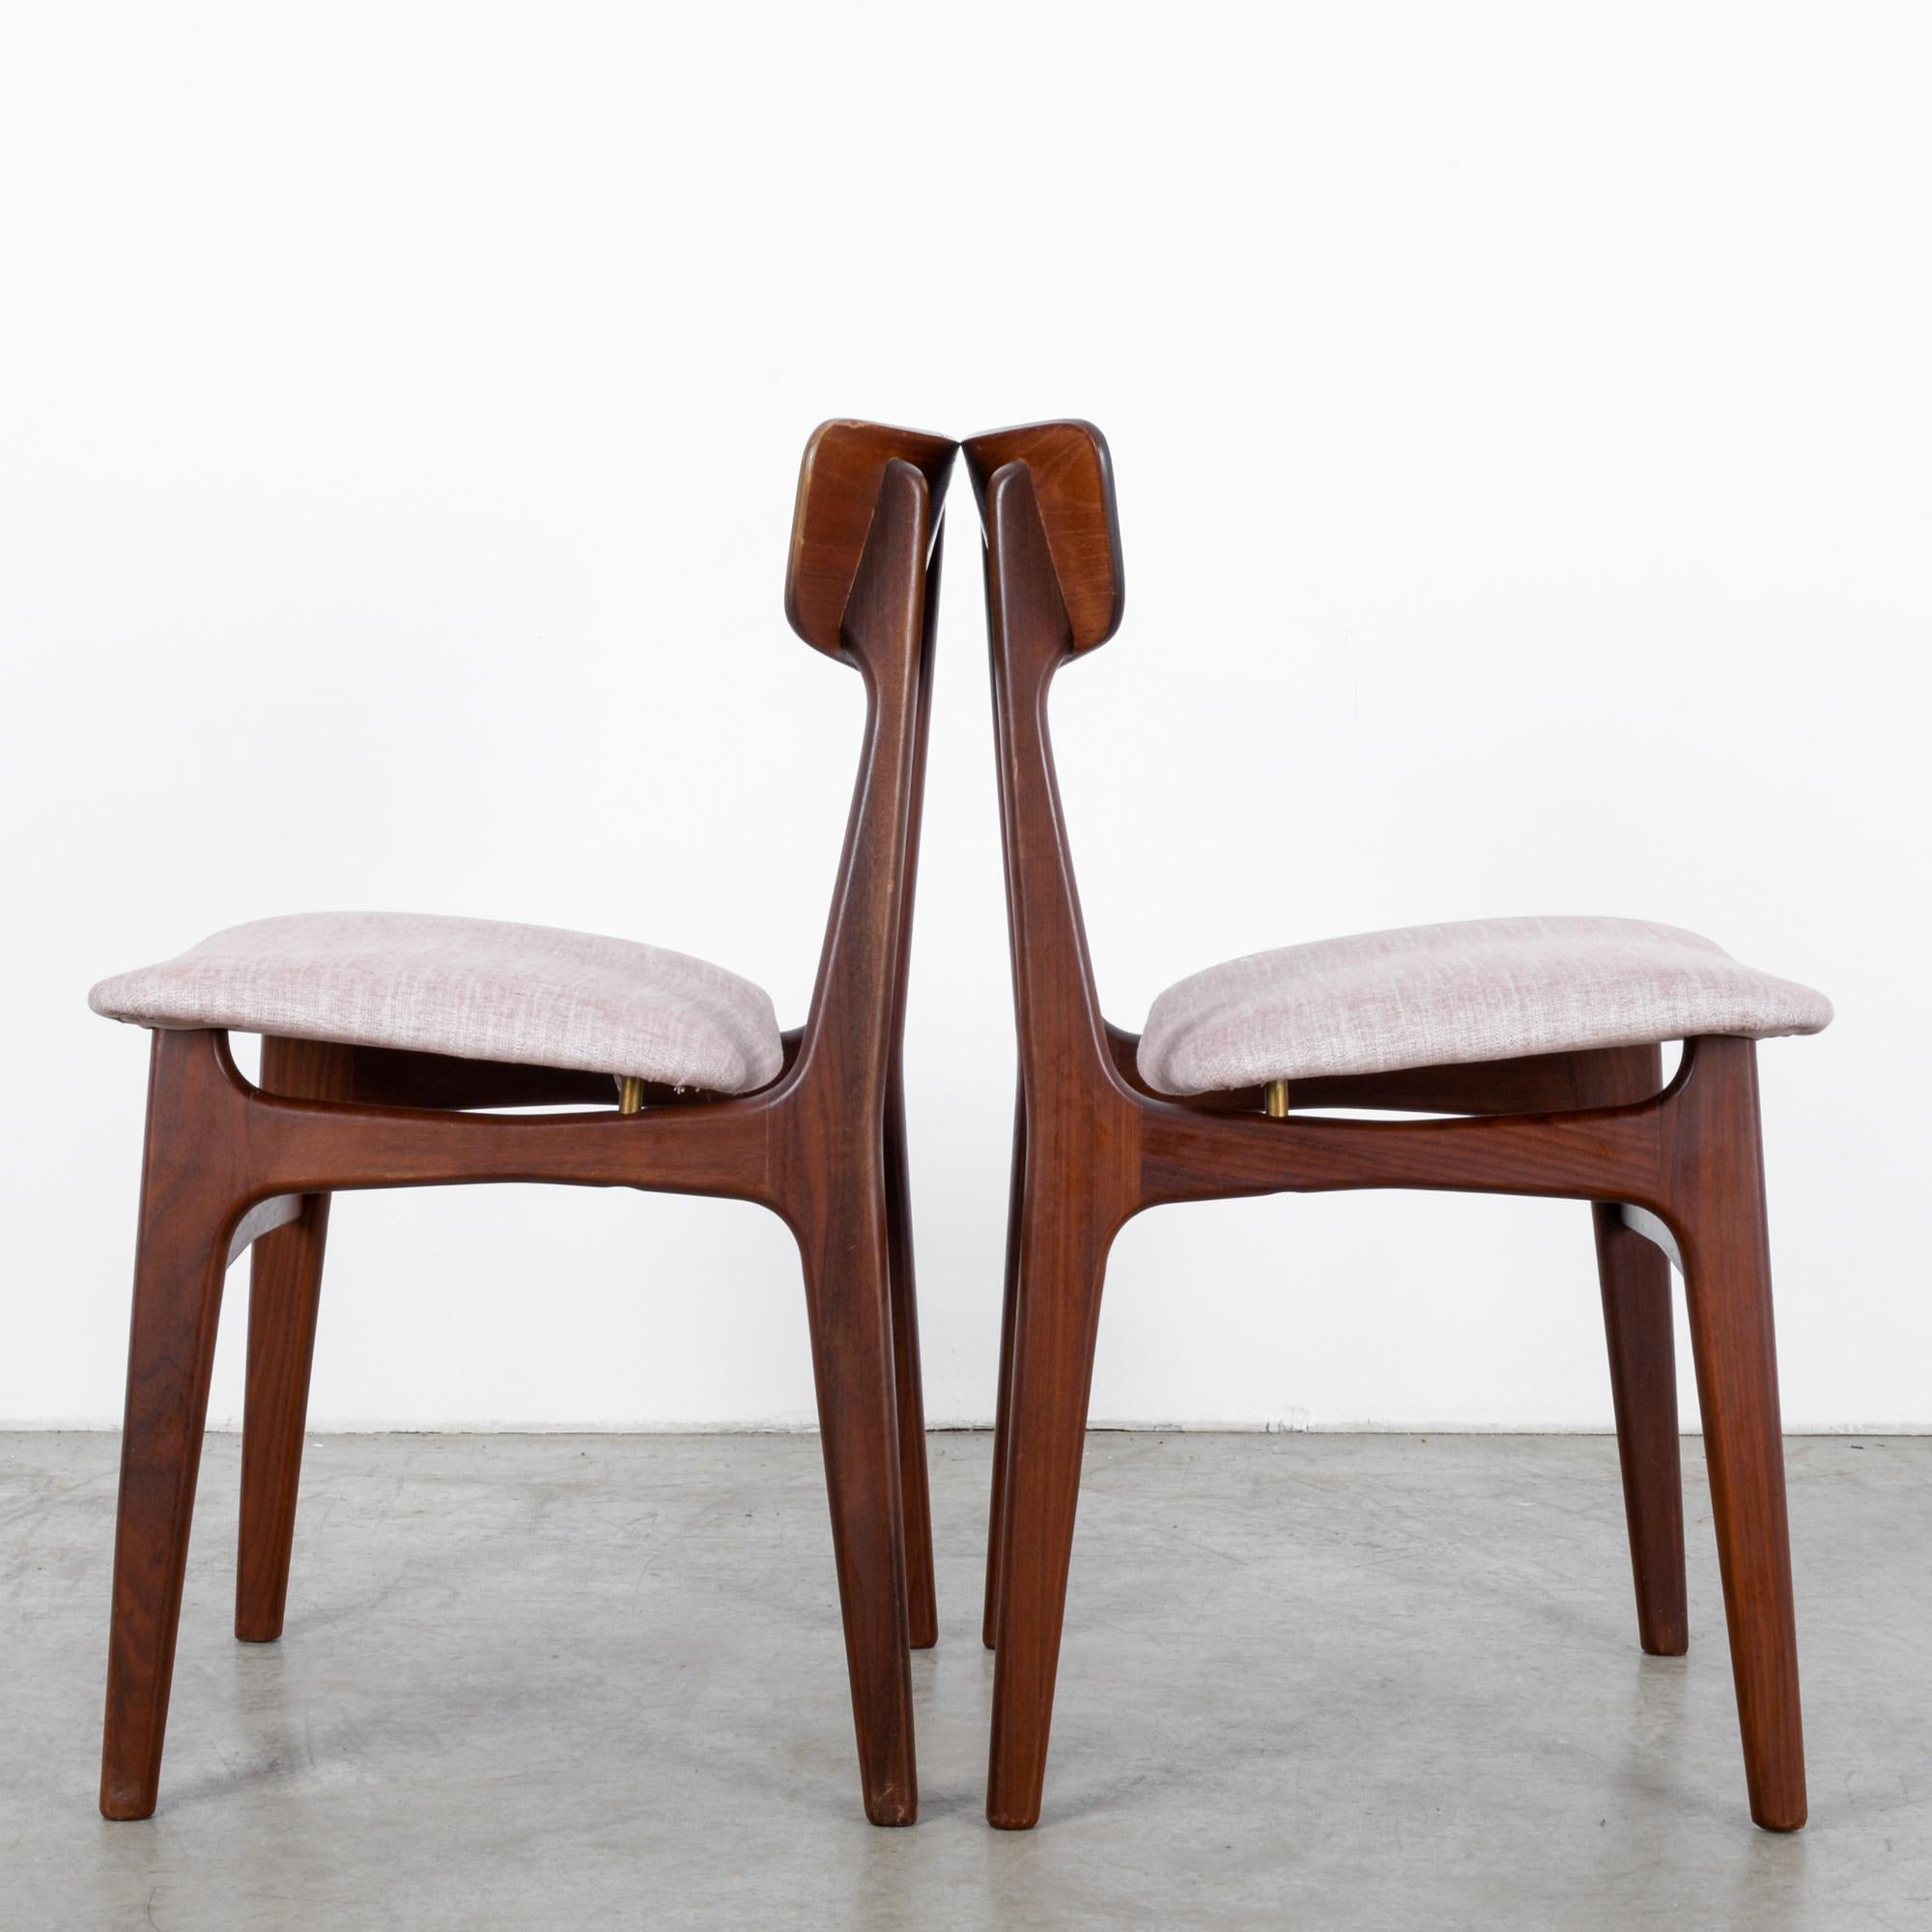 Scandinavian Modern 1960s Danish Teak Chairs by Glostrup, a Pair